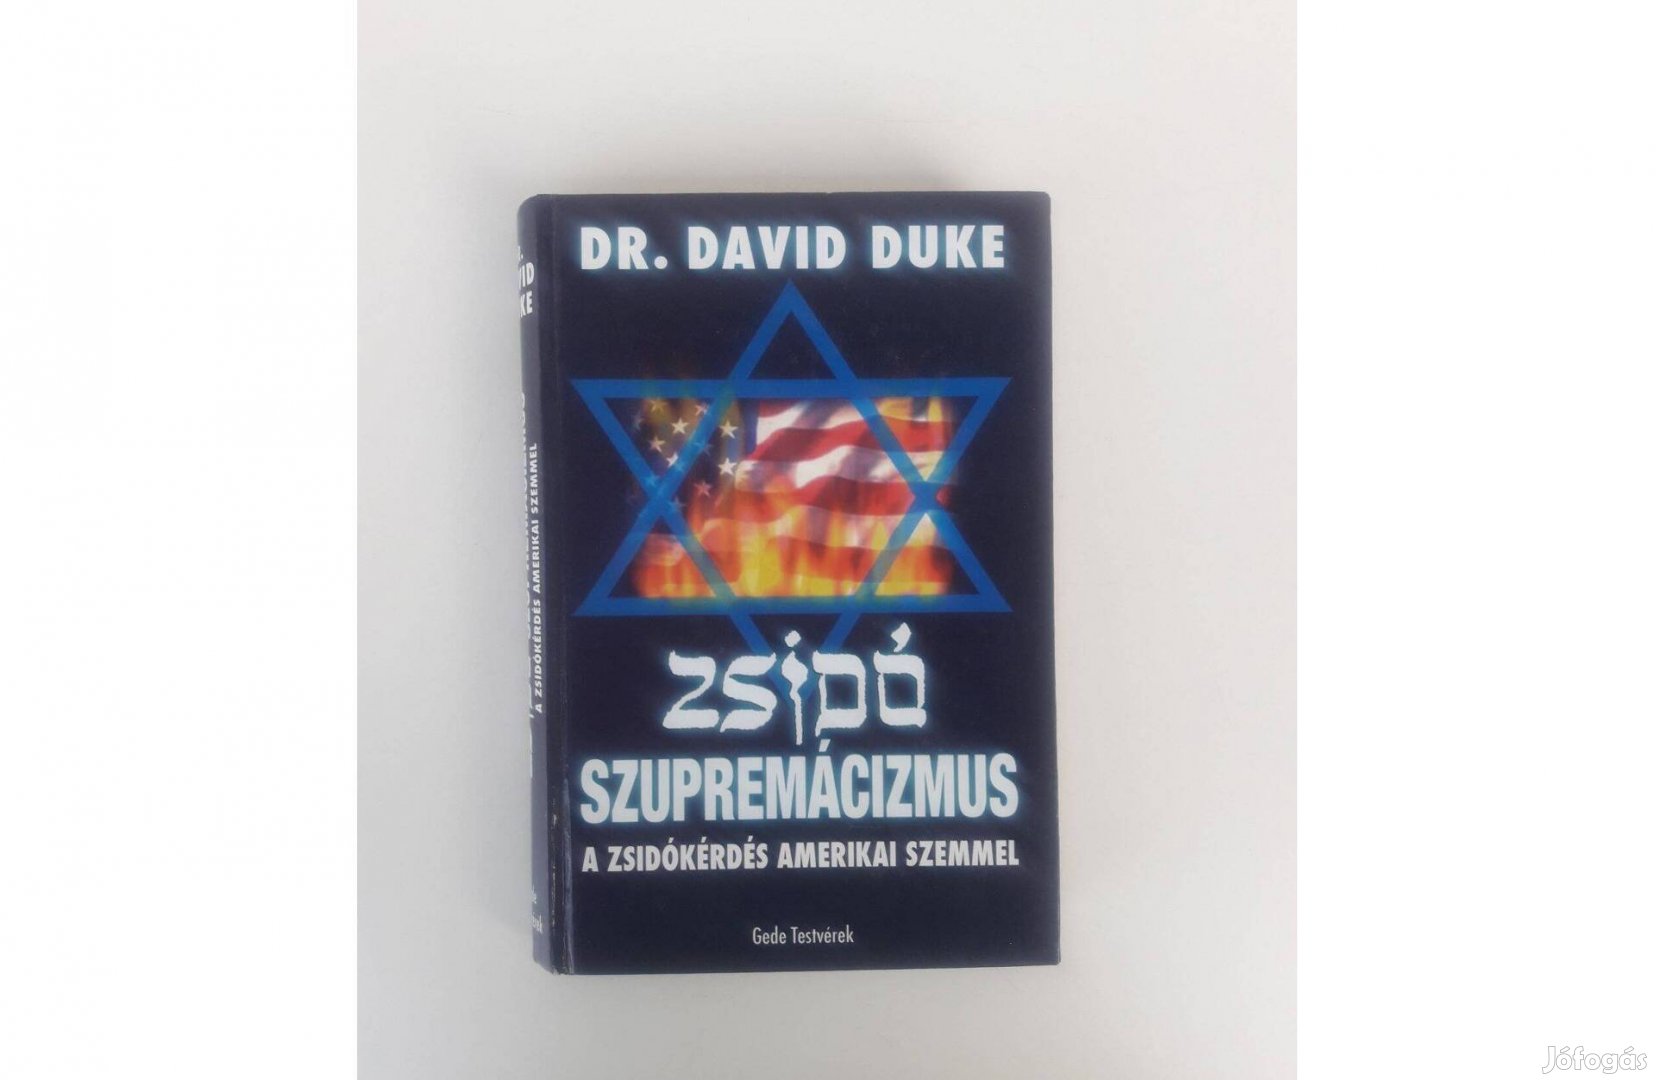 Dr. David Duke - Zsidó Szupremácizmus könyv szép állapotban eladó